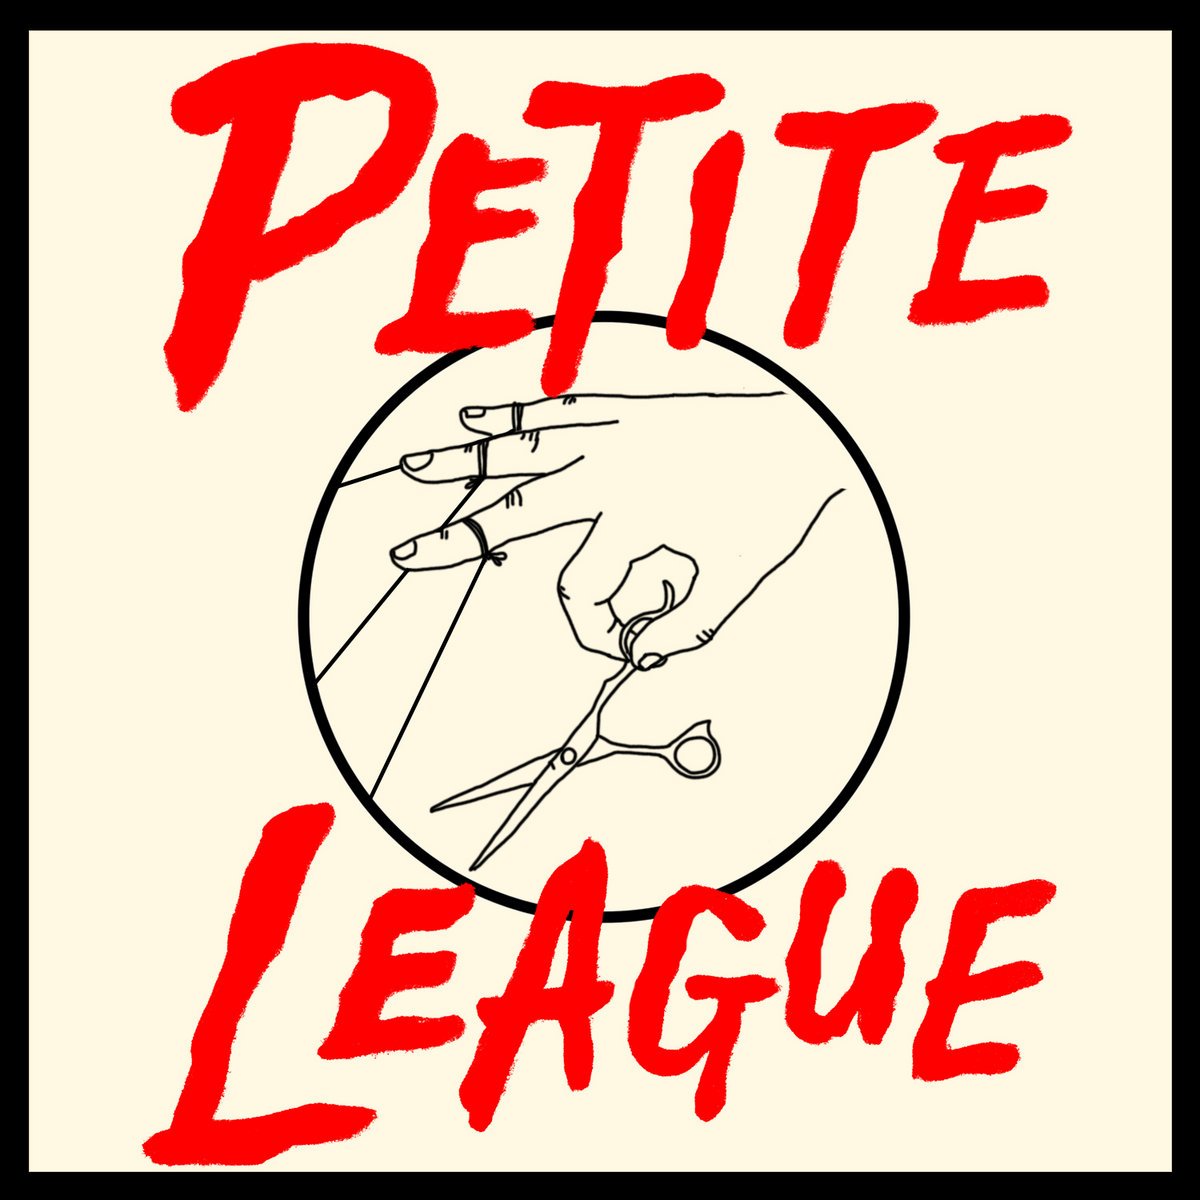 No Hitter - Petite League